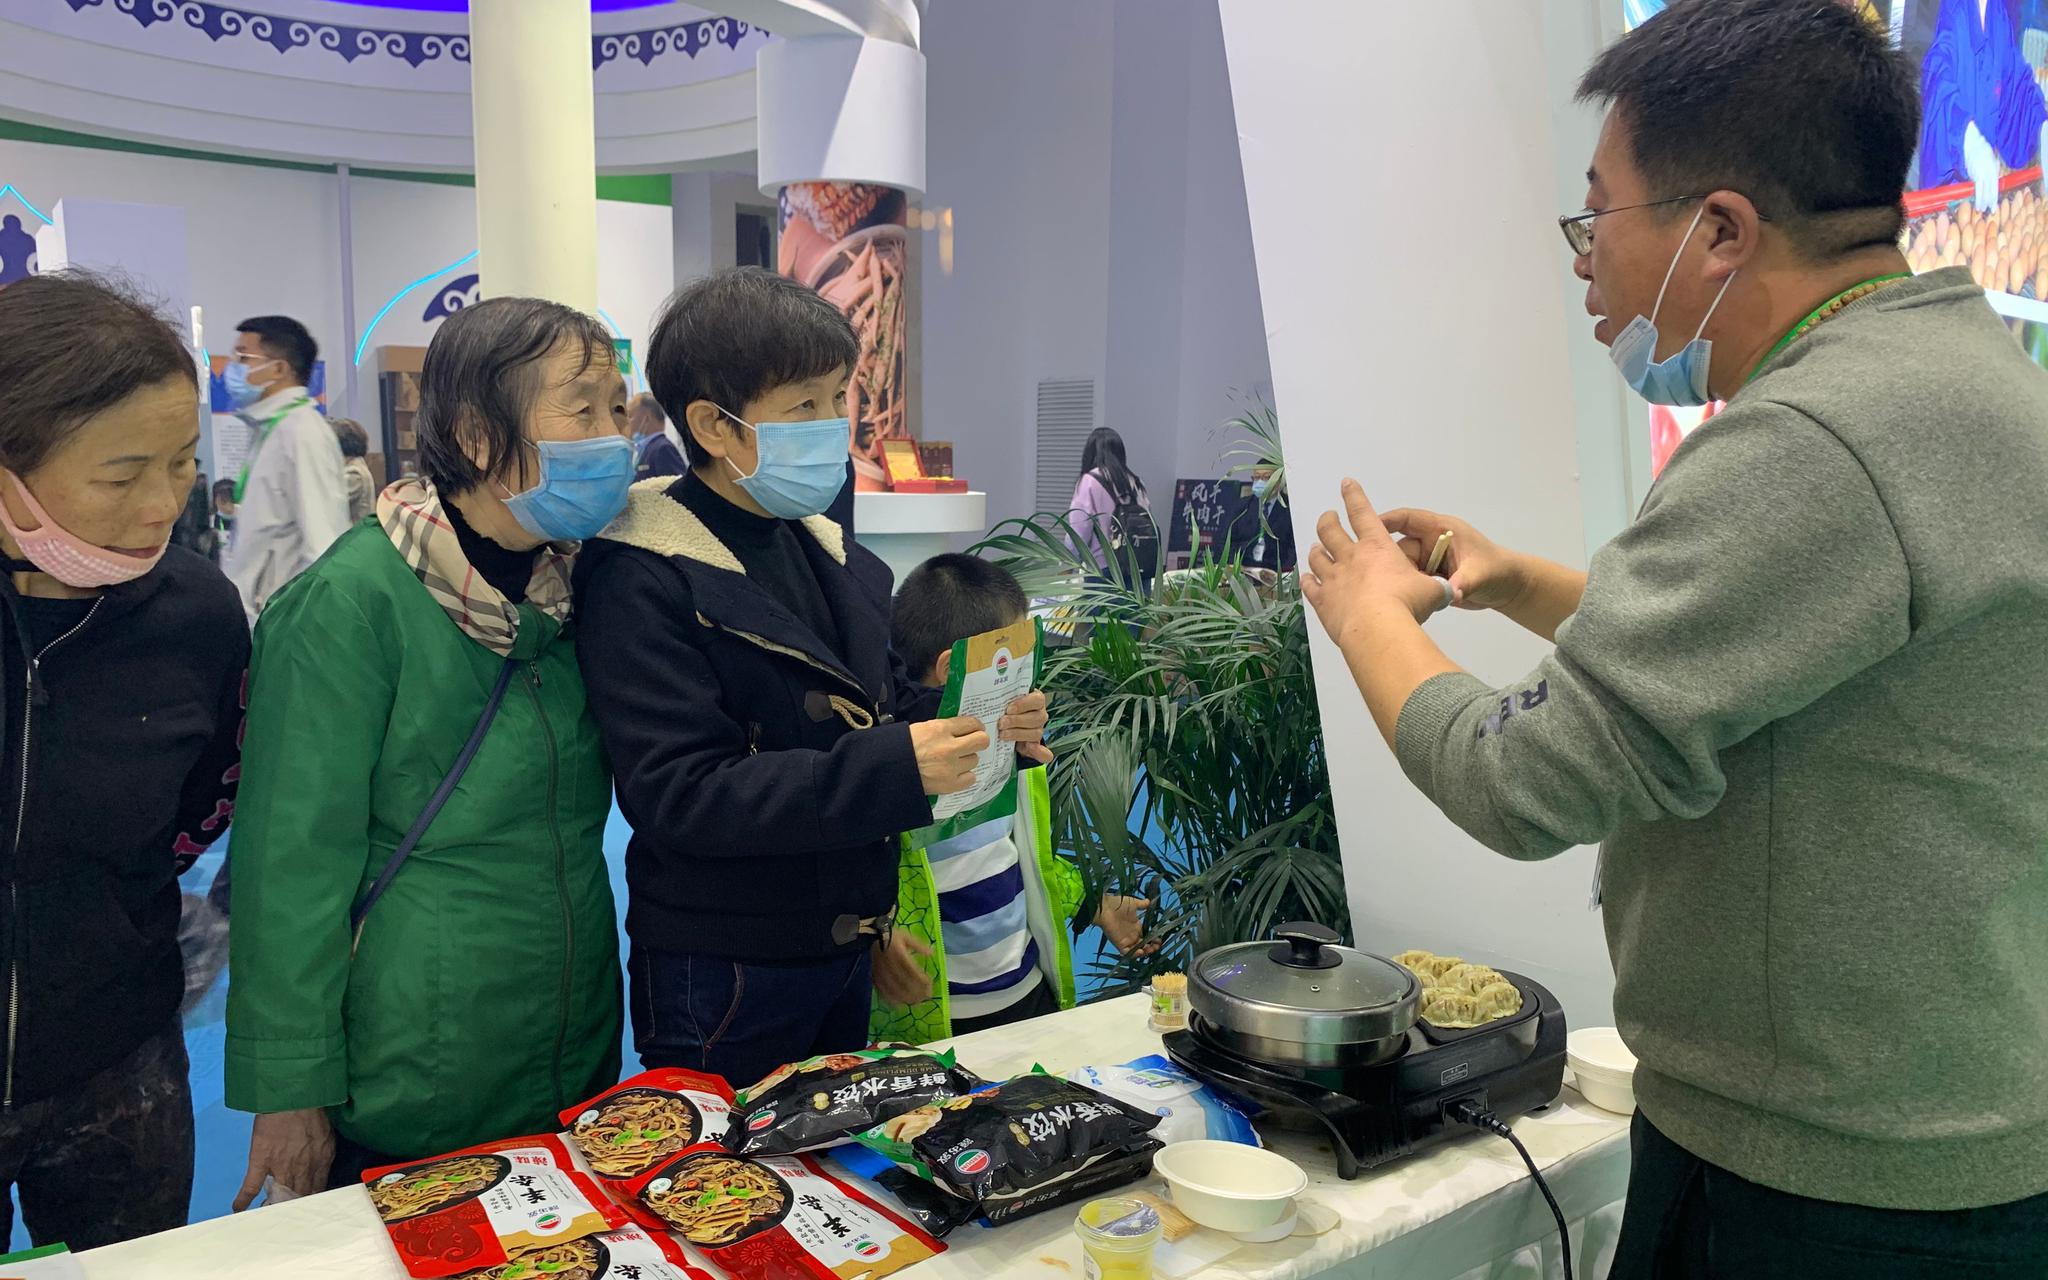 工作人员向参观市民介绍产品。新京报记者 耿子叶 摄